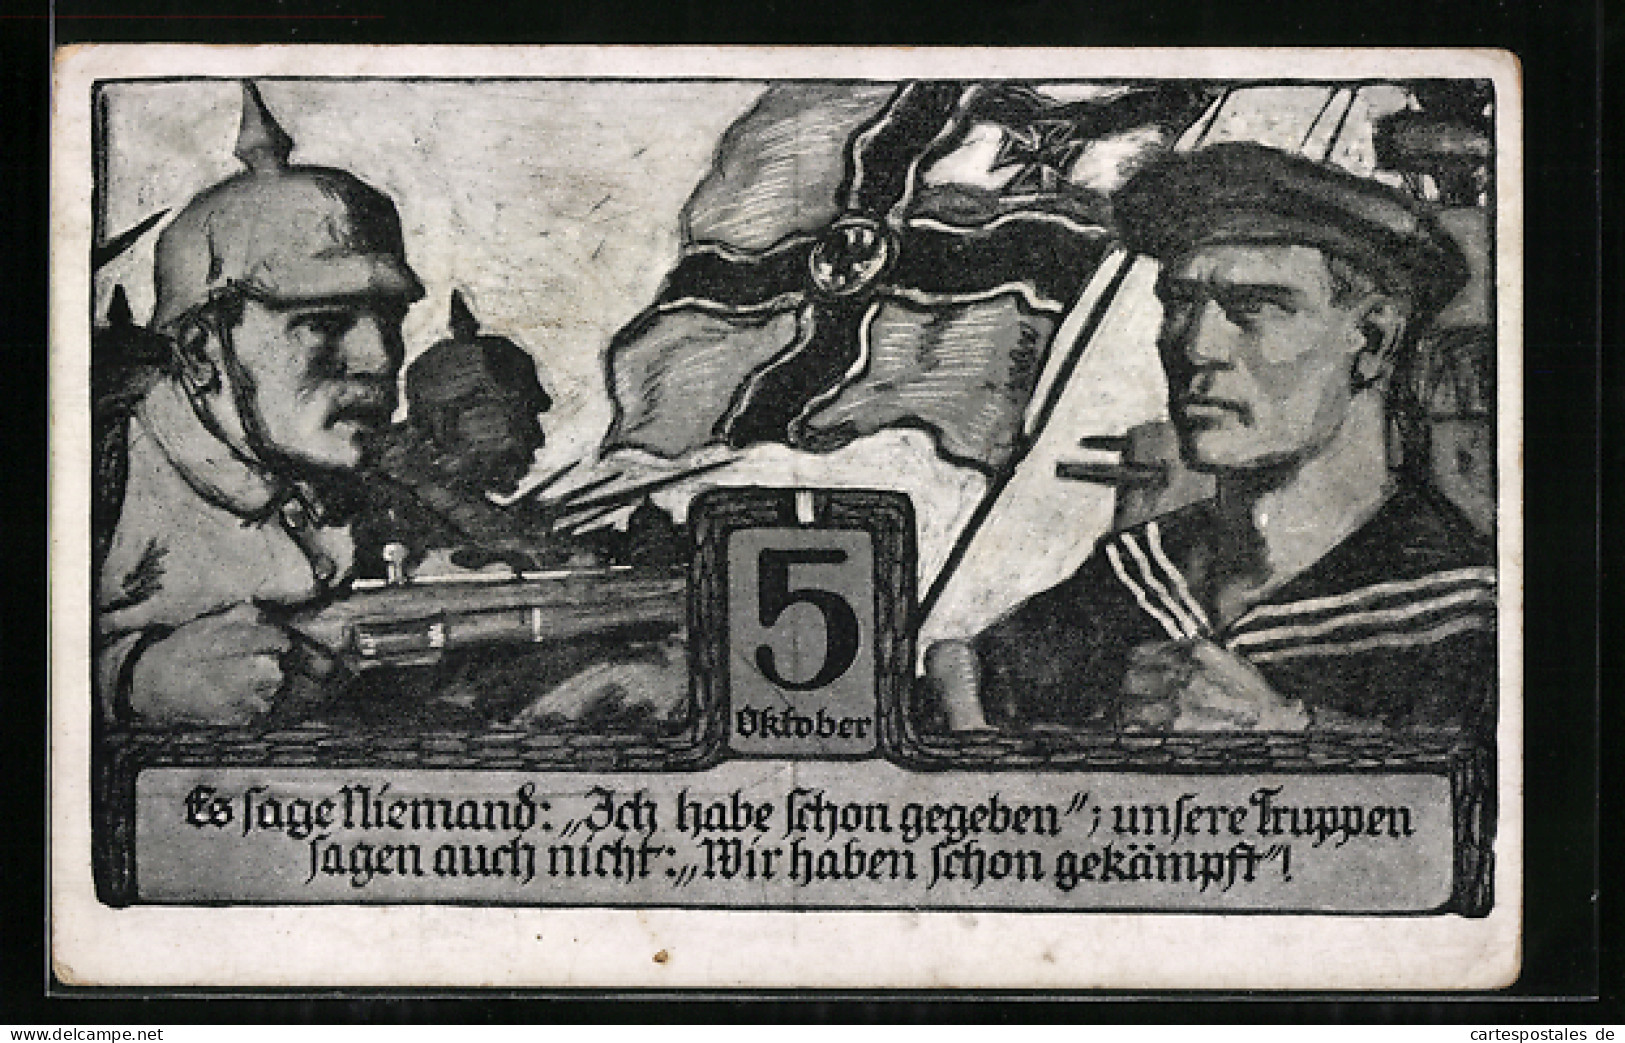 AK Heer-Soldat Und Marine-Soldat, Es Sage Niemand: Ich Habe Schon Gegeben, Hamburger Opfertag, 5.10.1916  - Weltkrieg 1914-18